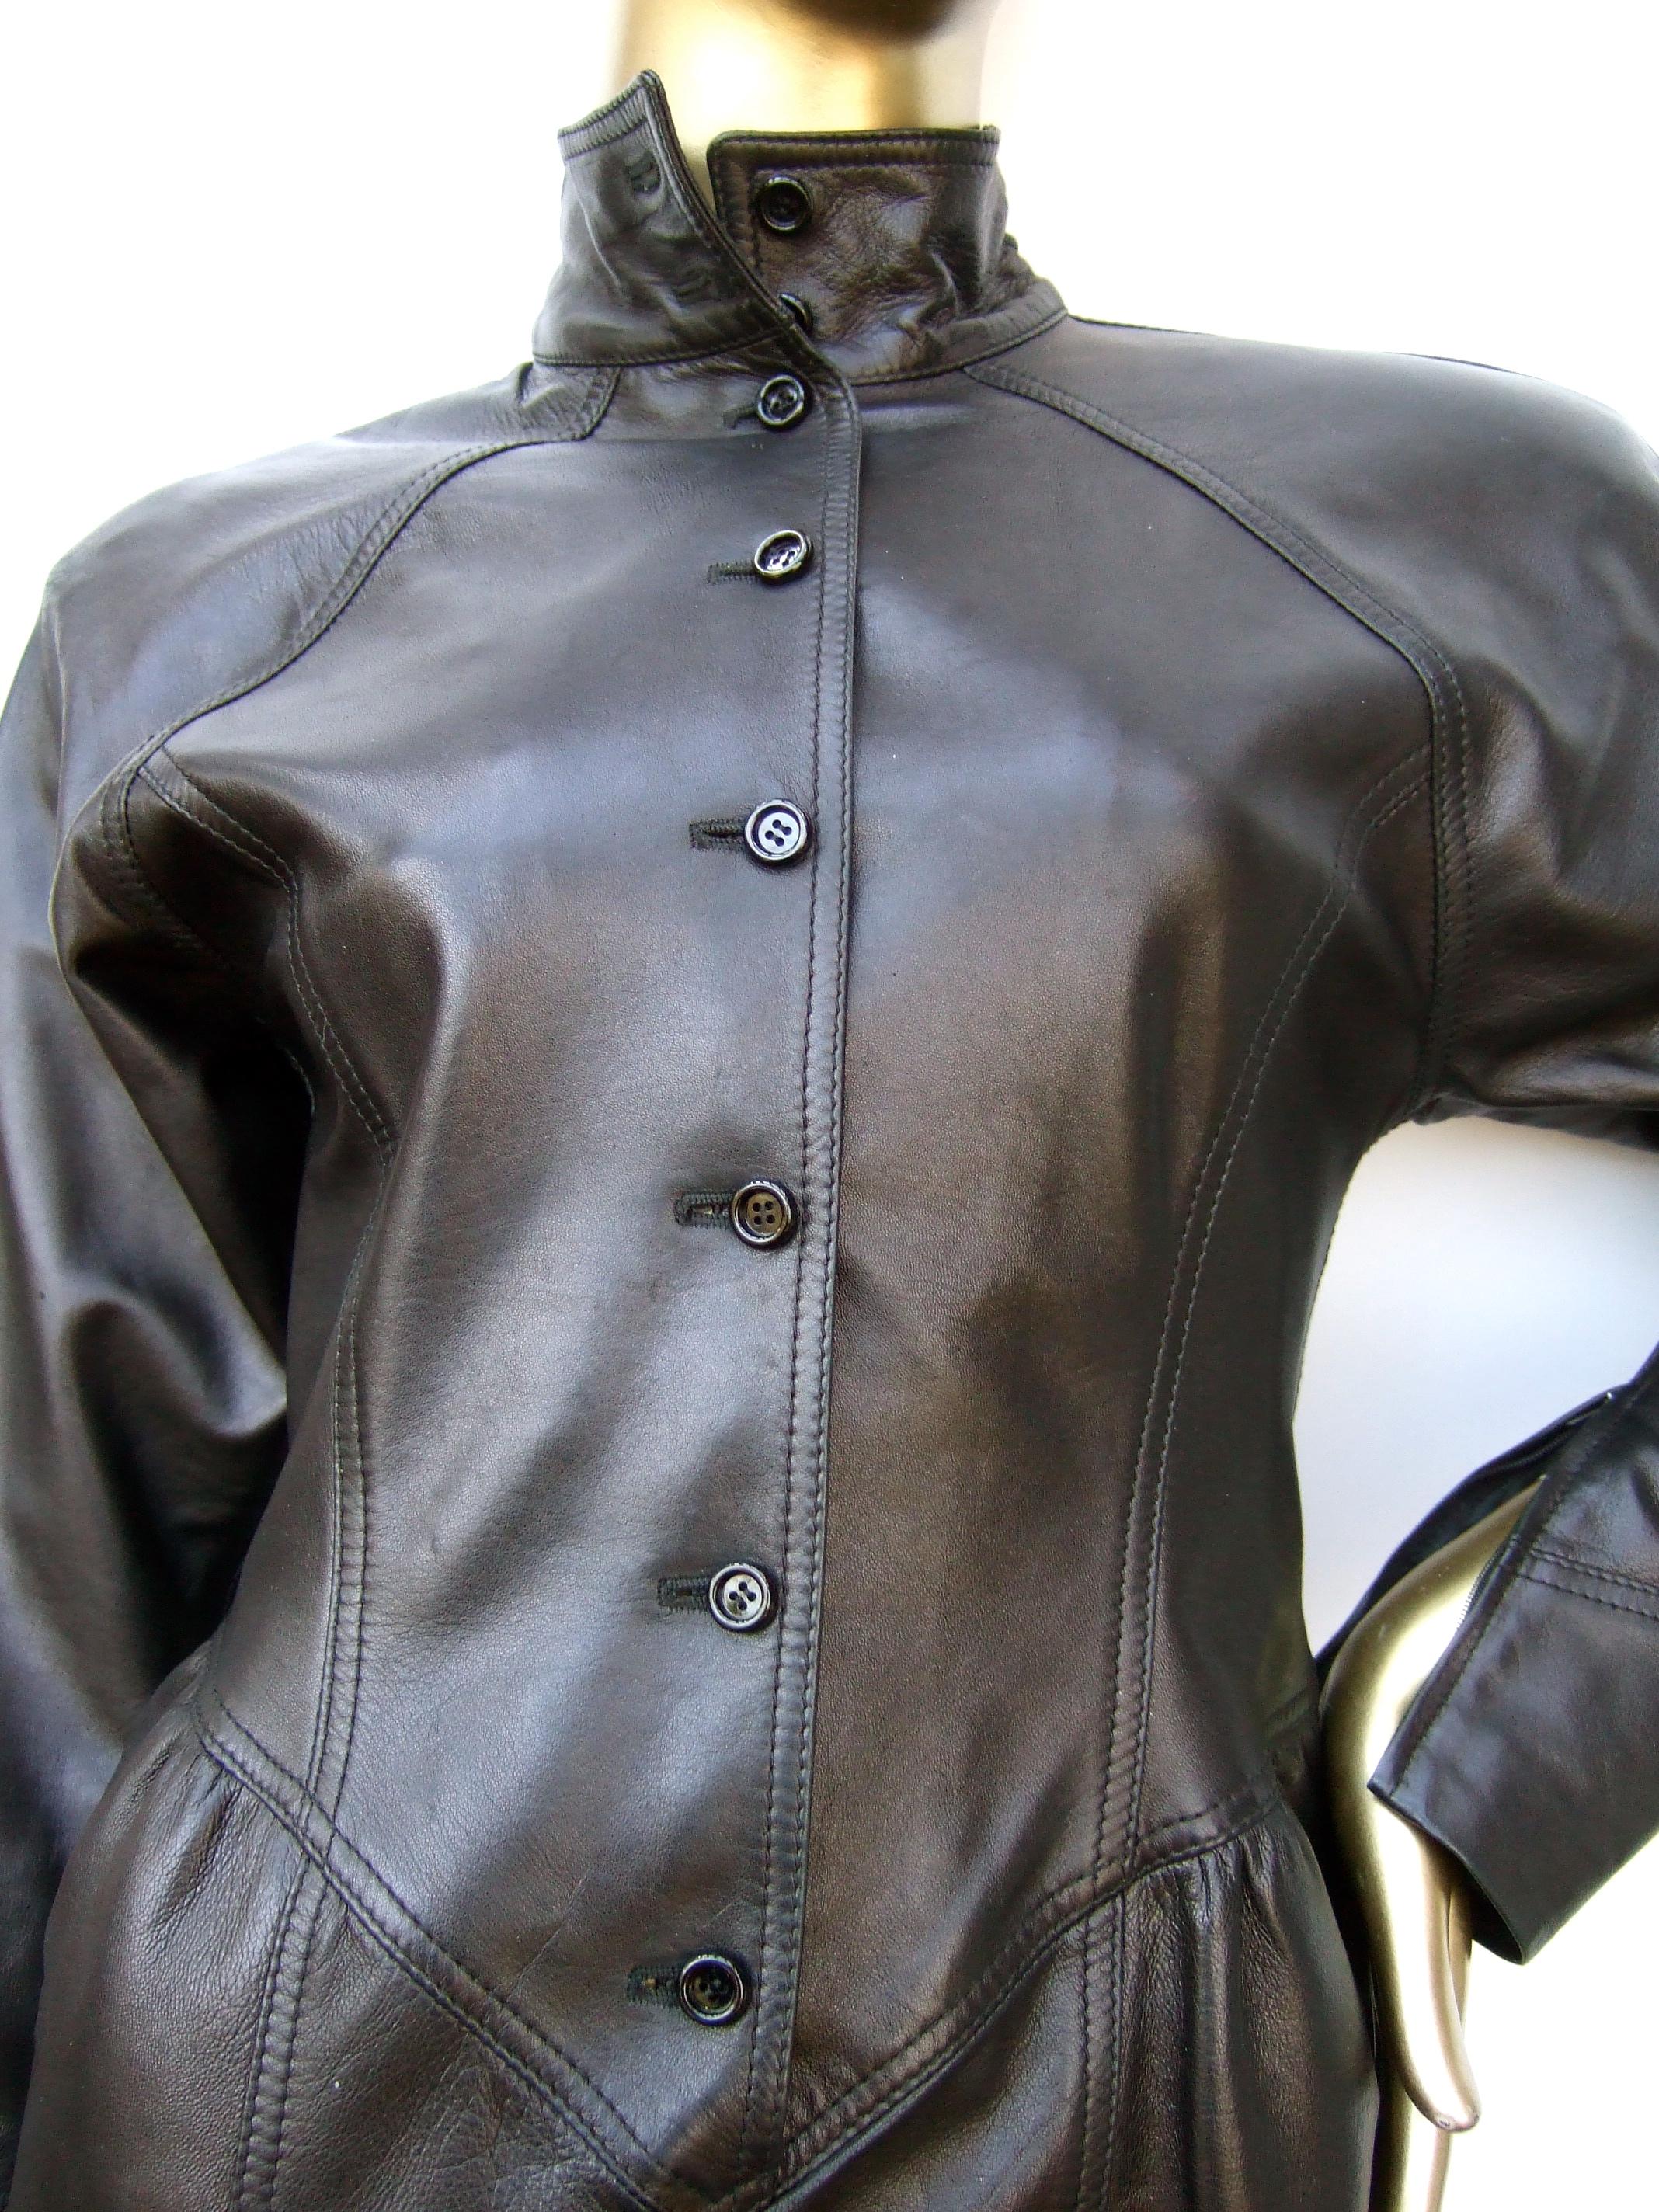 Emanuel Ungaro Paris Avant Garde Edgy Brown Leather Dress Made in Italy c 1980s Pour femmes en vente